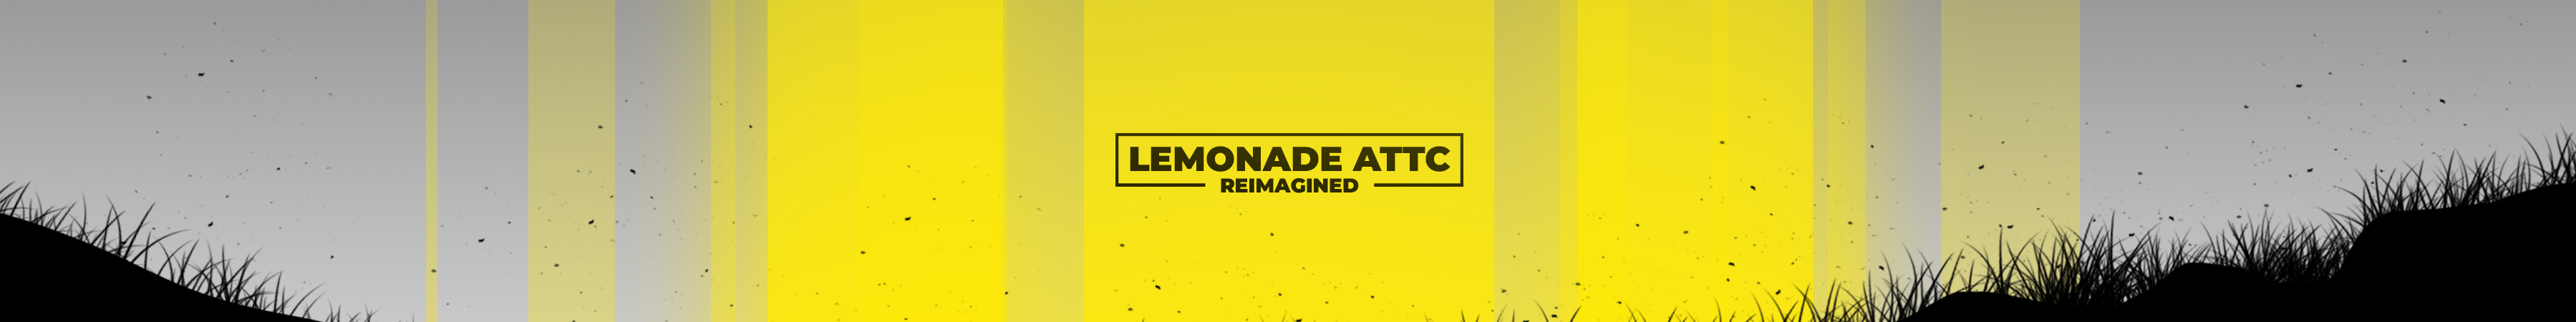 обложка автора Lemonade ATTC